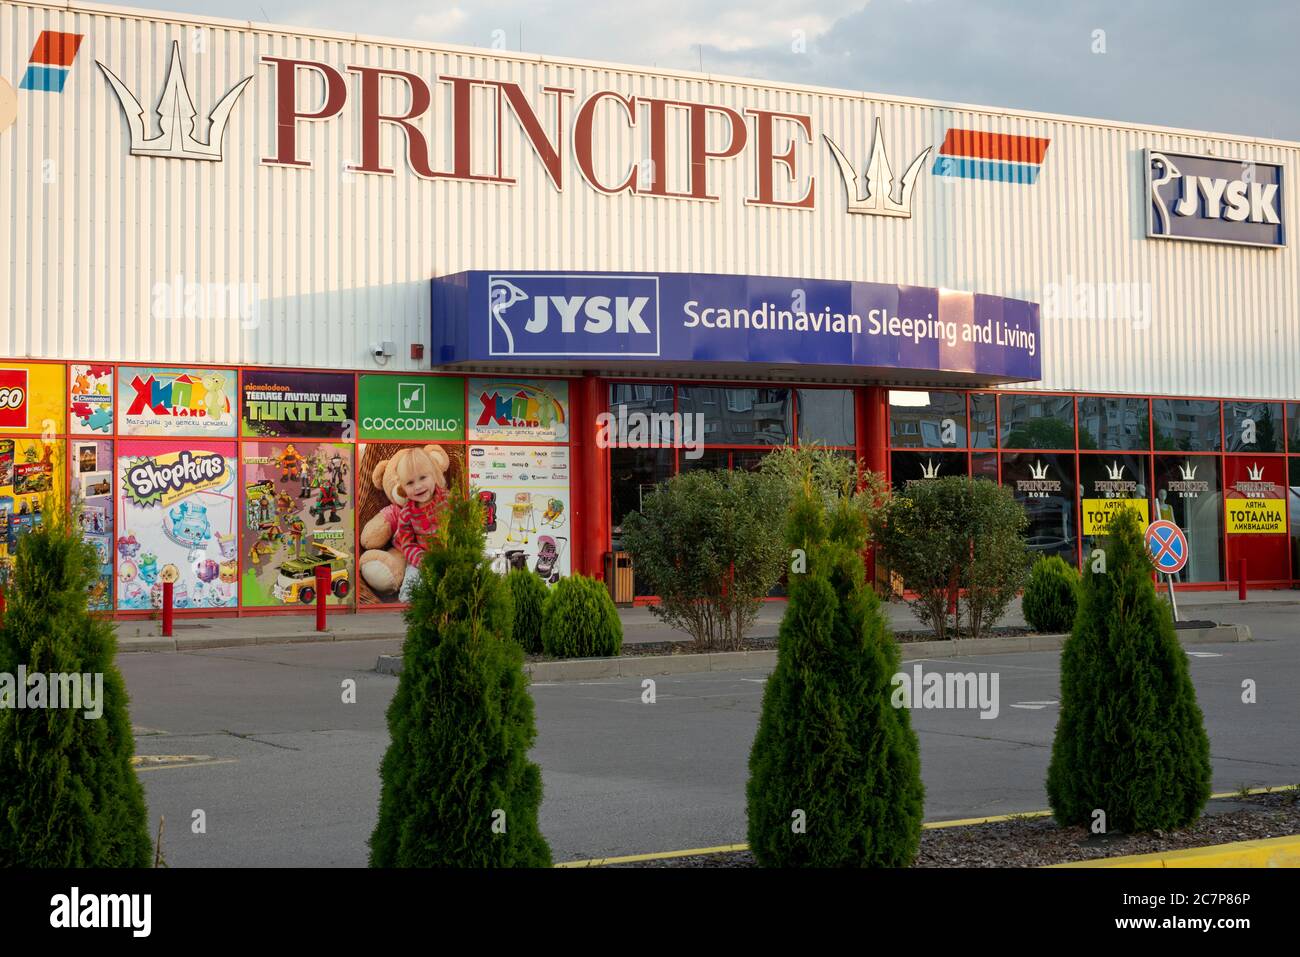 Principe Logo und Jysk skandinavischen Schlaf-und Wohnhauseinrichtung Laden Fassade in Sofia Bulgarien Stockfoto